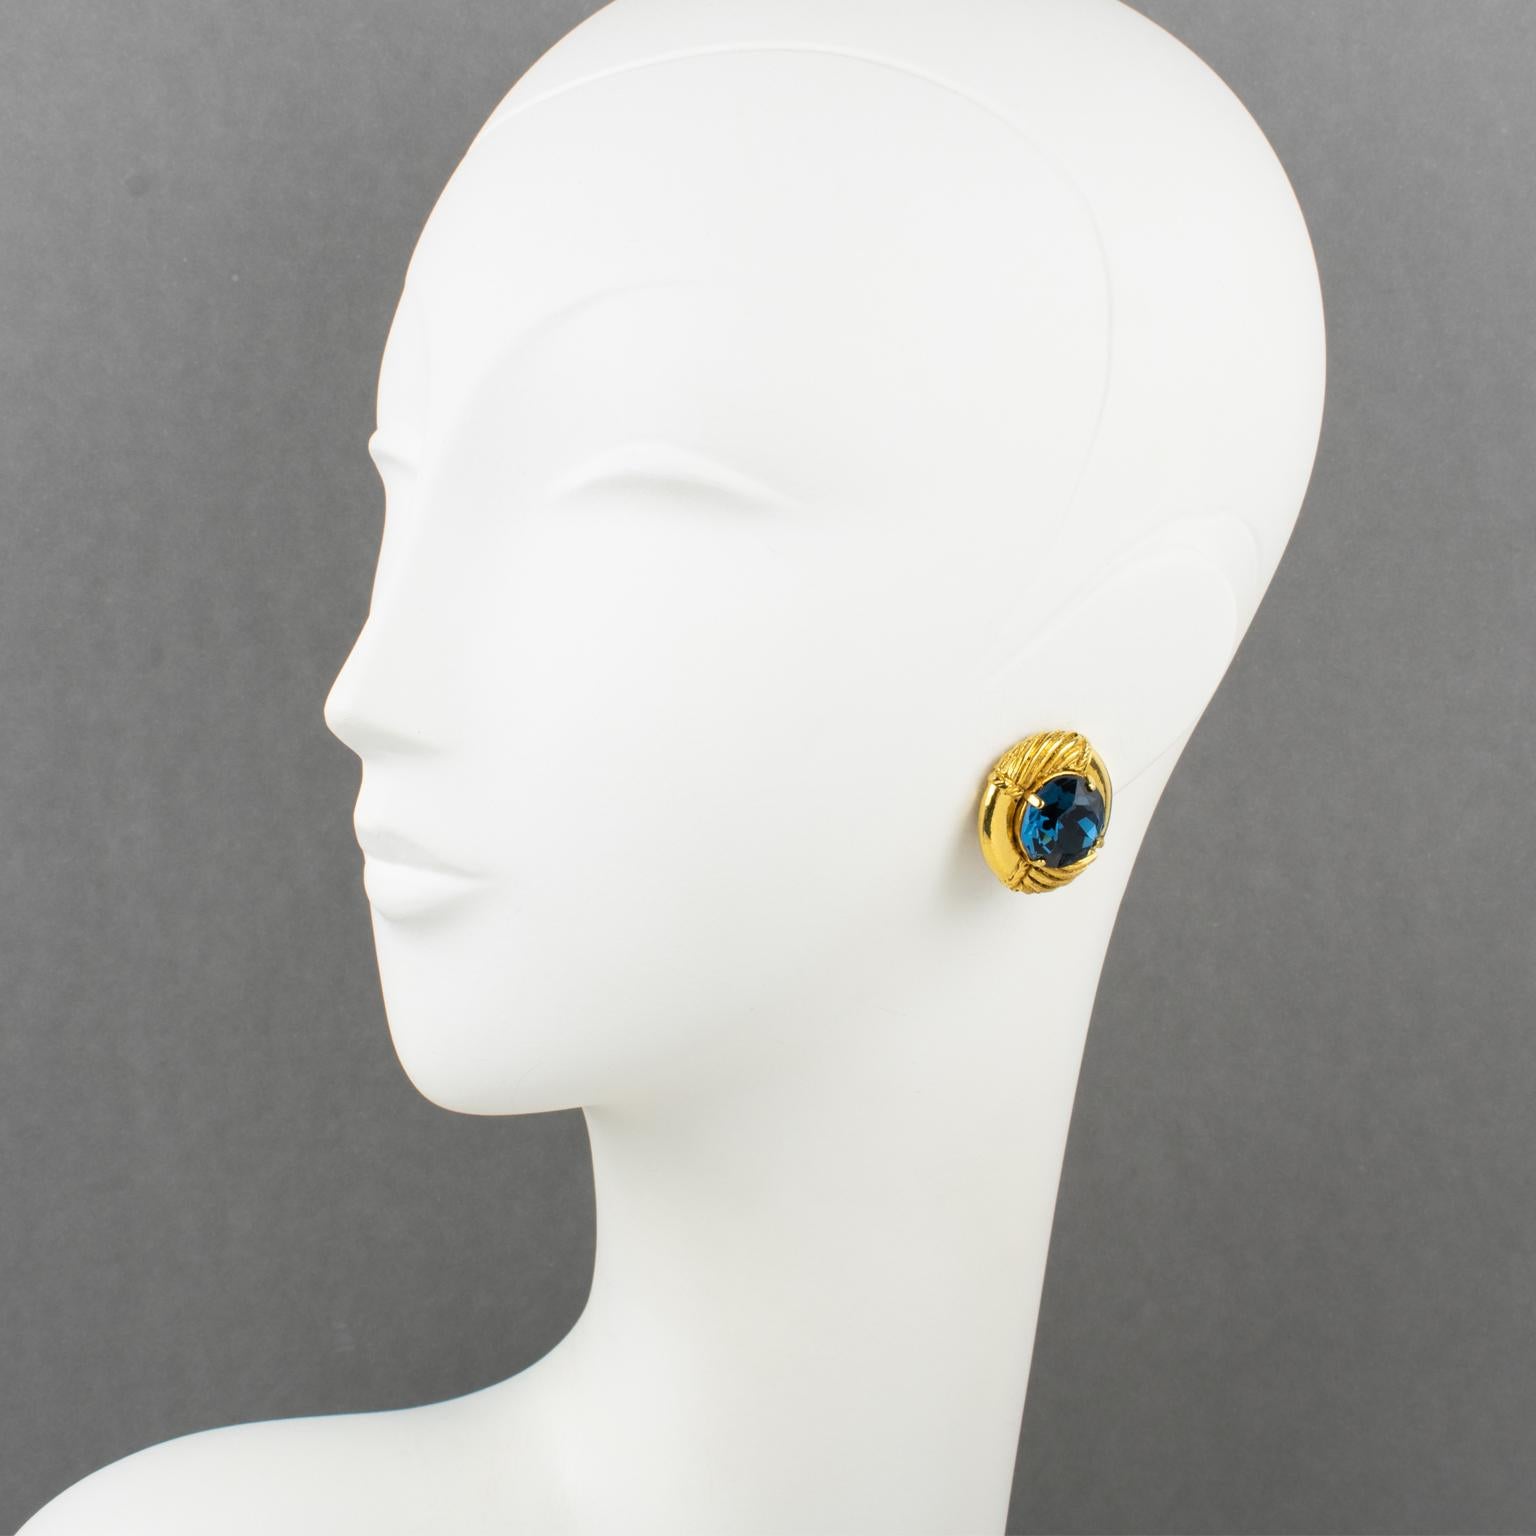 Il s'agit d'une remarquable paire de boucles d'oreilles à clip conçue par la célèbre maison de couture Sonia Rykiel Paris. Ces boucles d'oreilles arborent une superbe forme bombée en métal doré, avec un sommet texturé qui met en valeur un grand et